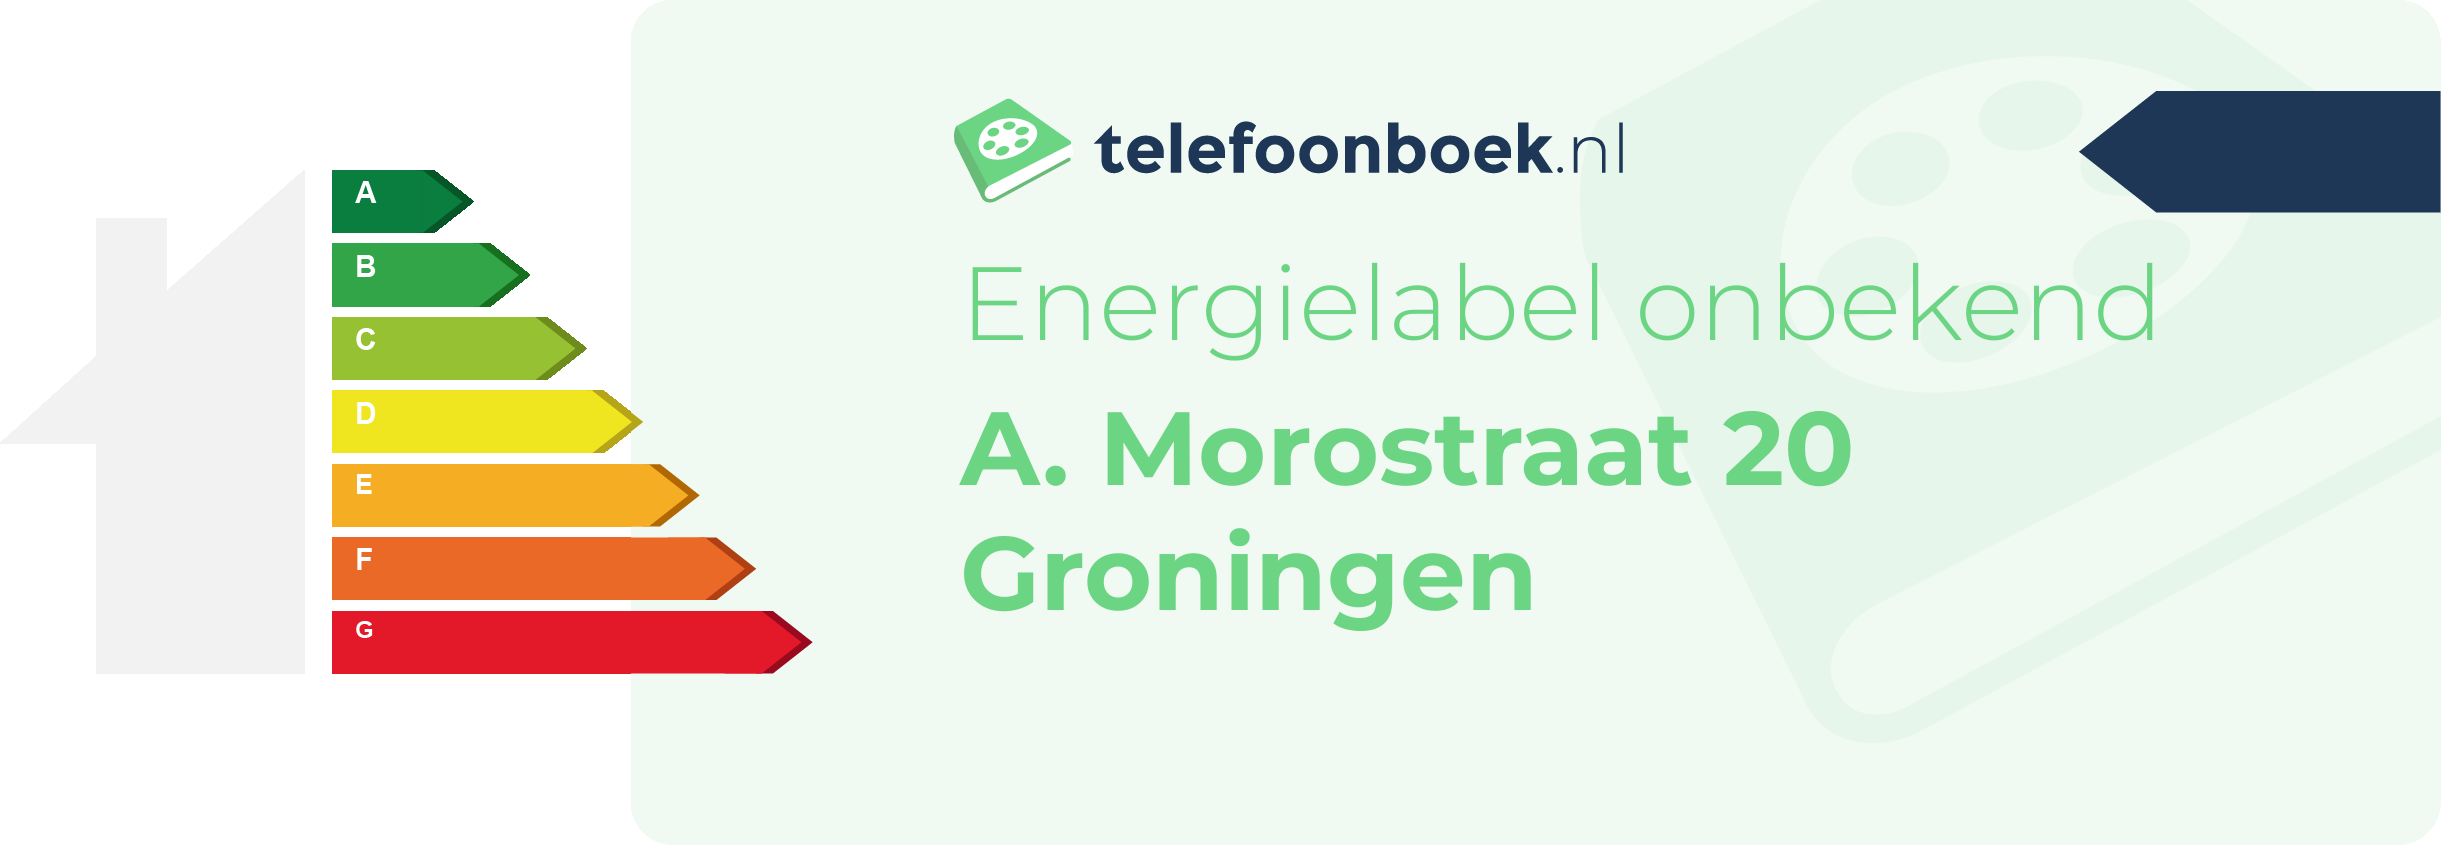 Energielabel A. Morostraat 20 Groningen